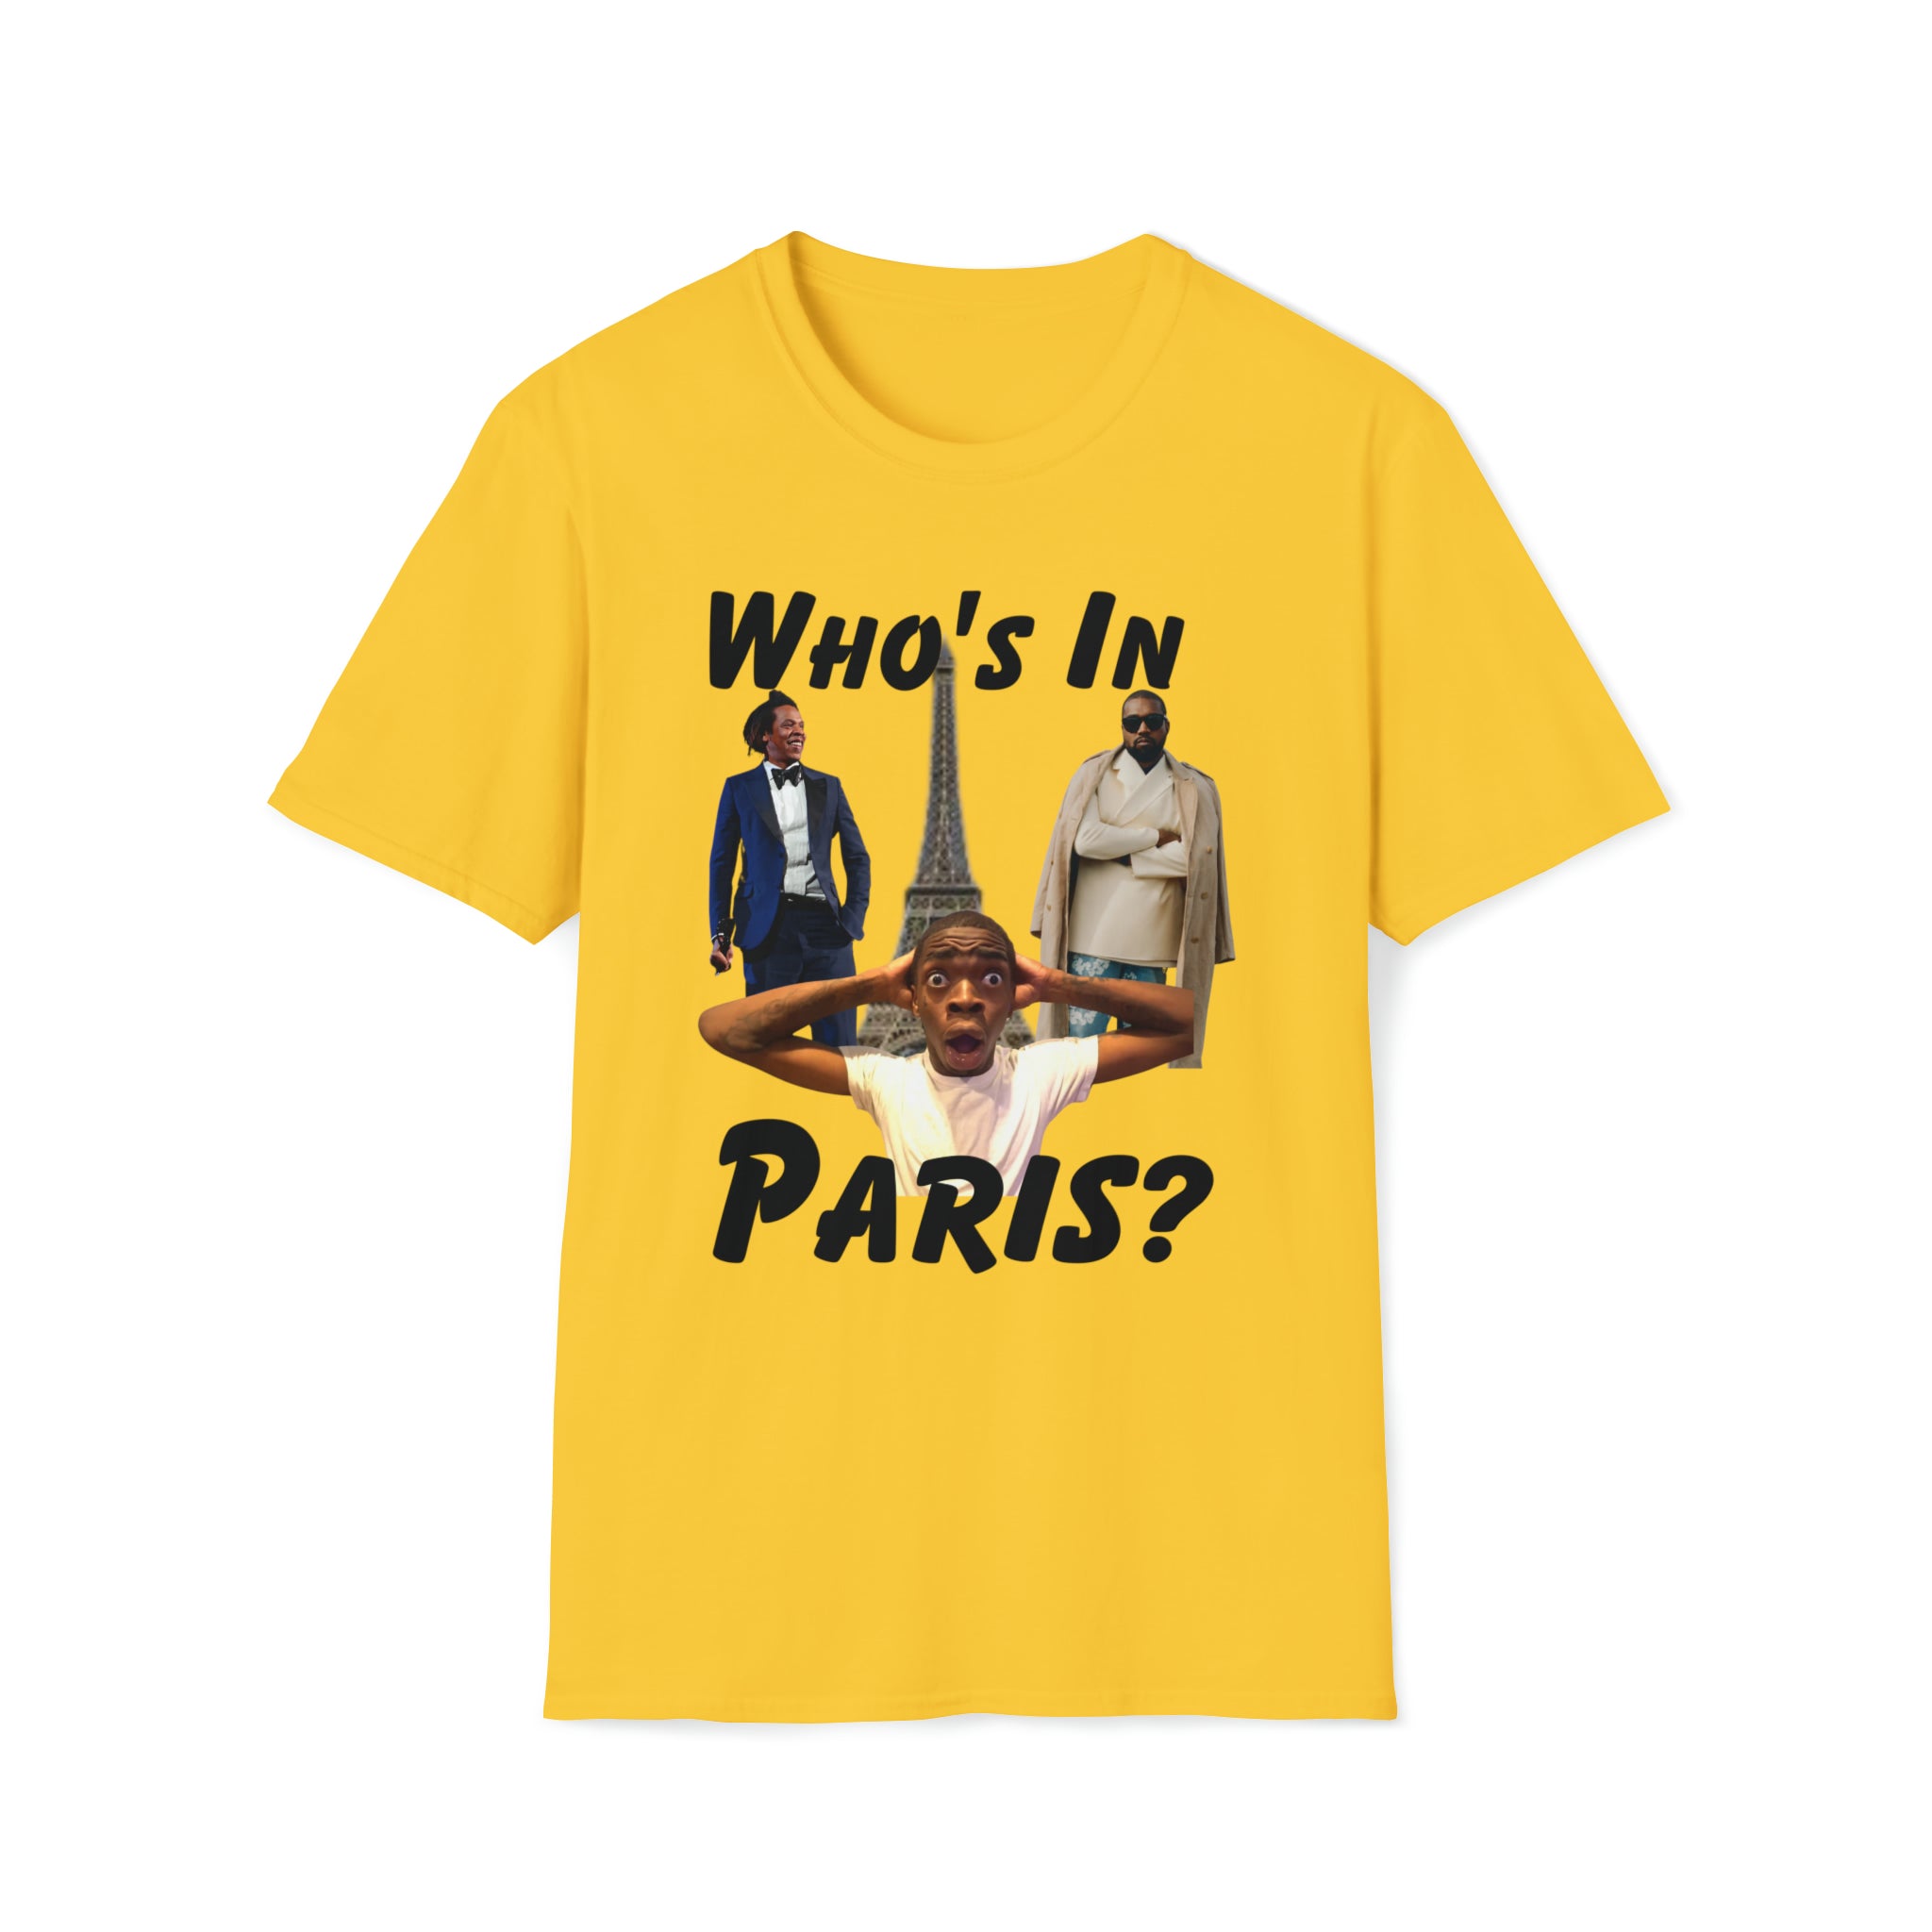 Who's In Paris?